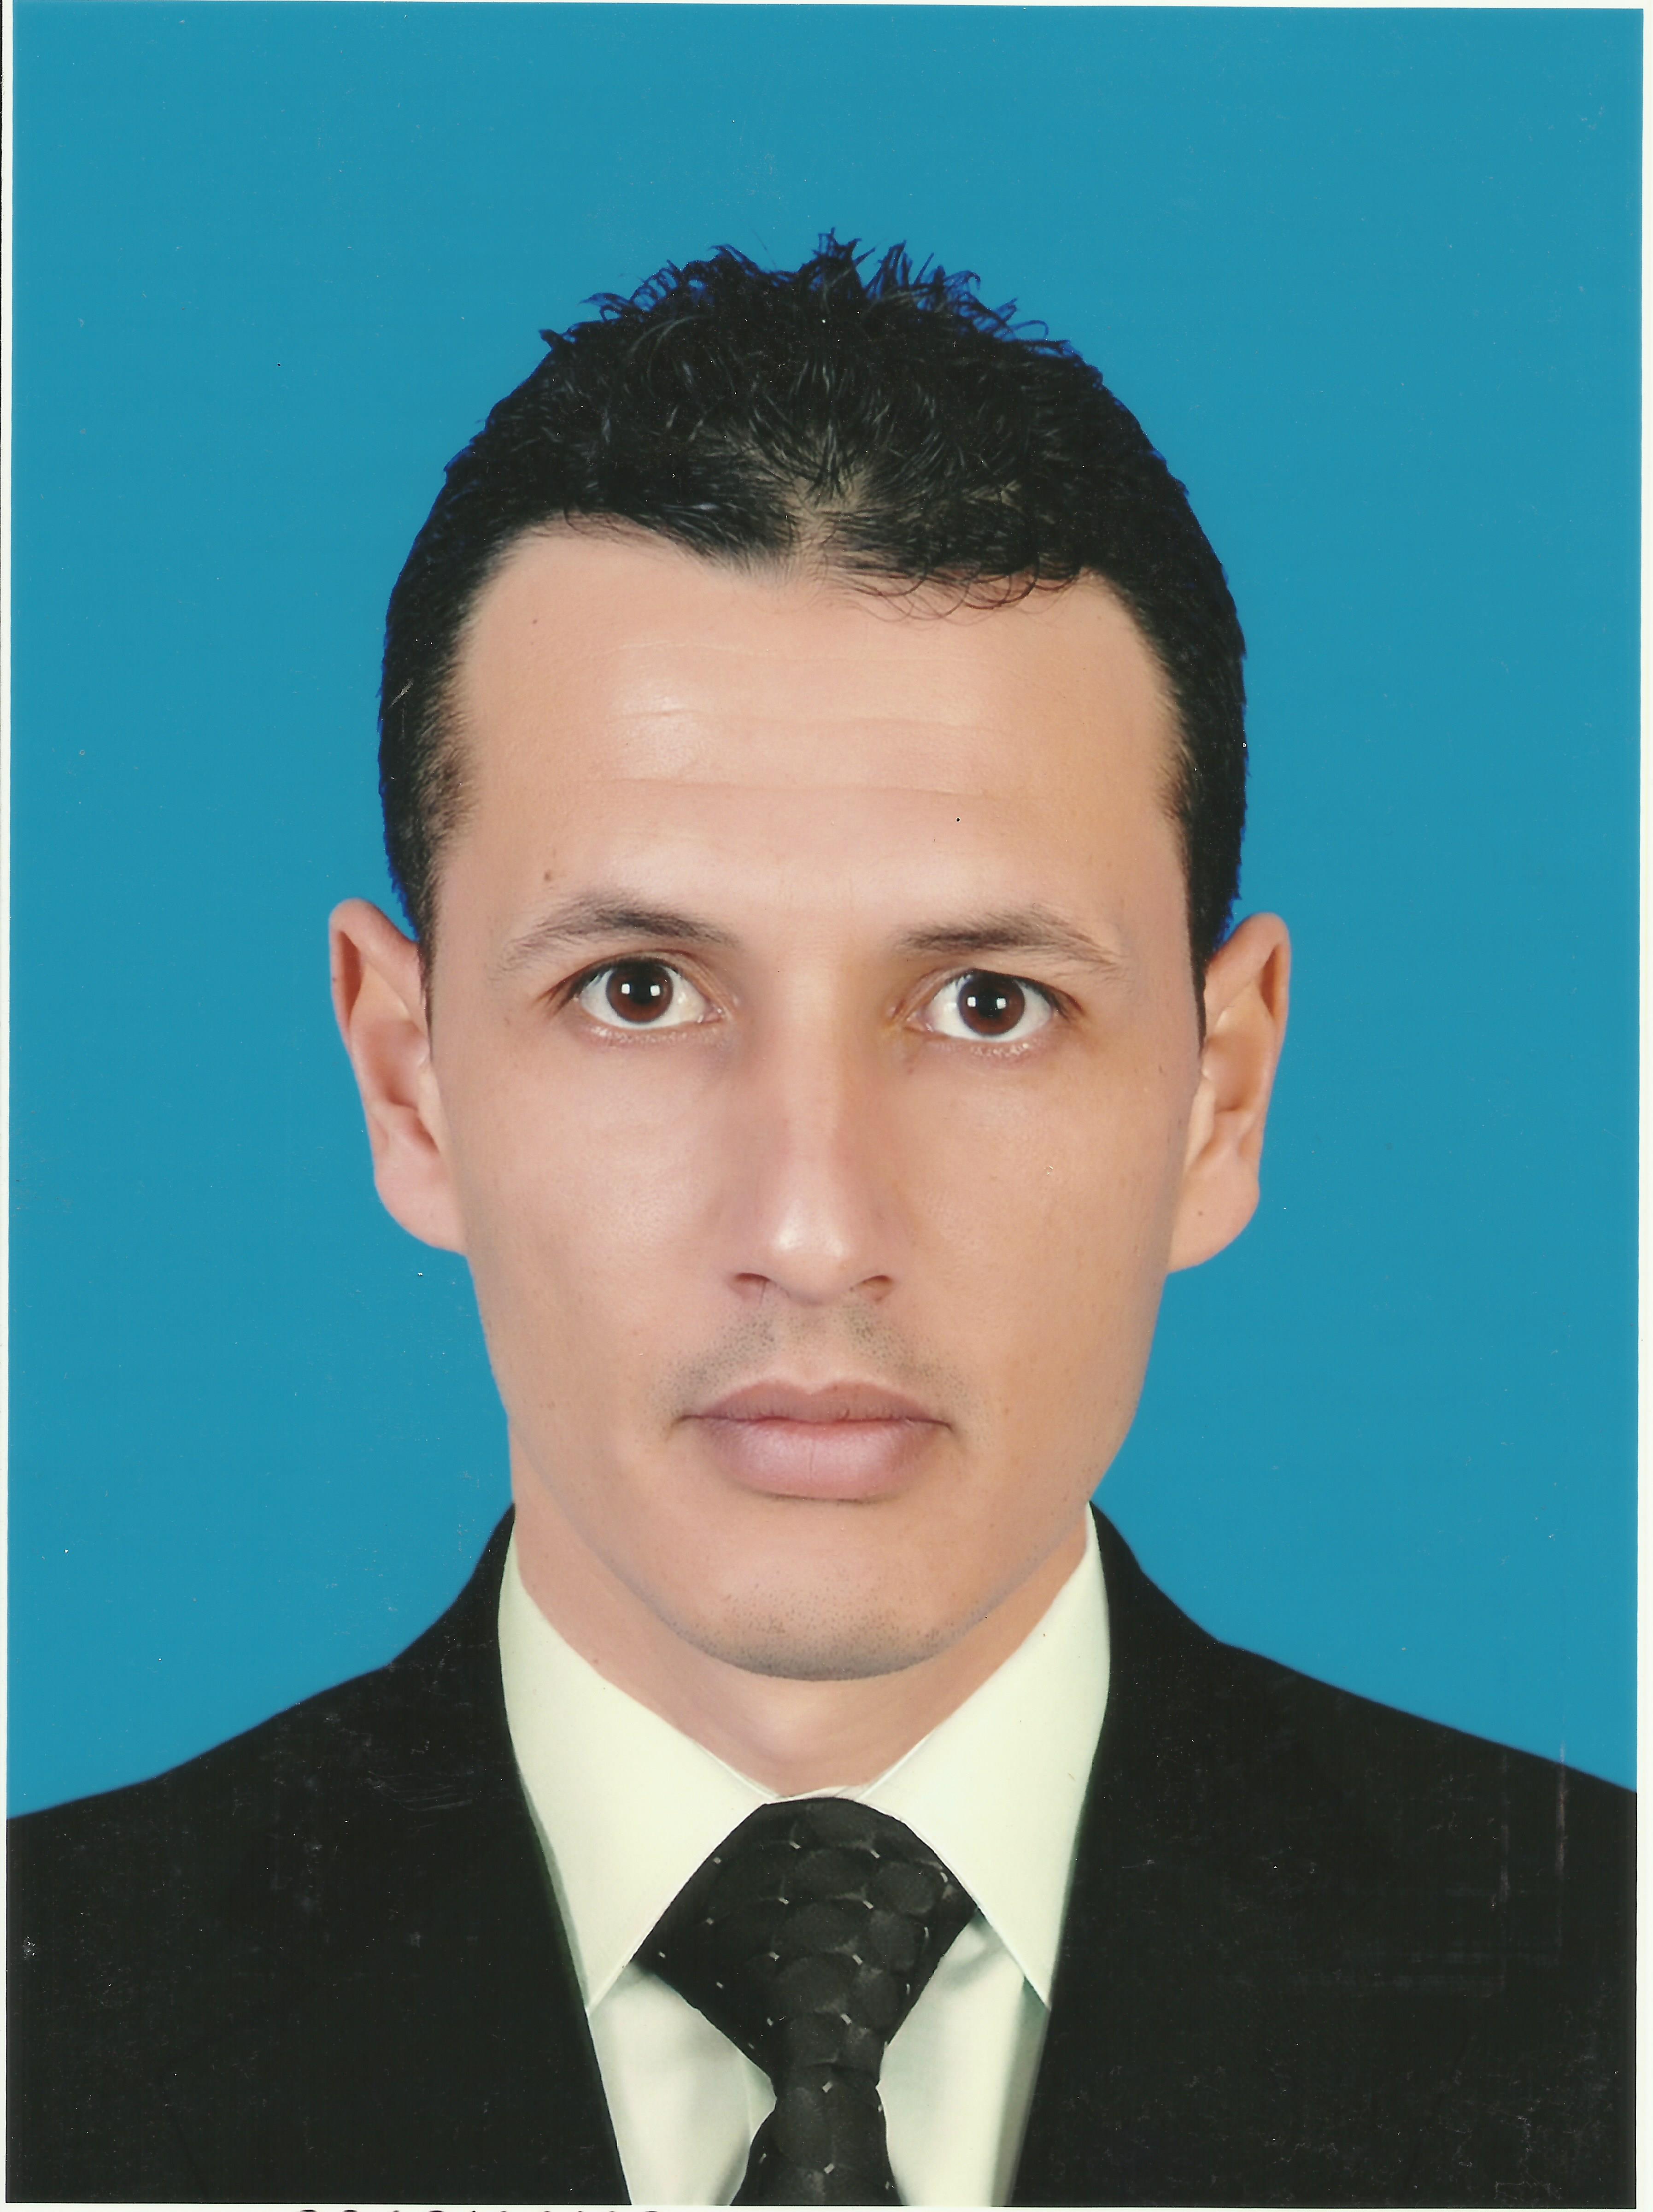 Ibrahim Musbah Ali eljaraiow